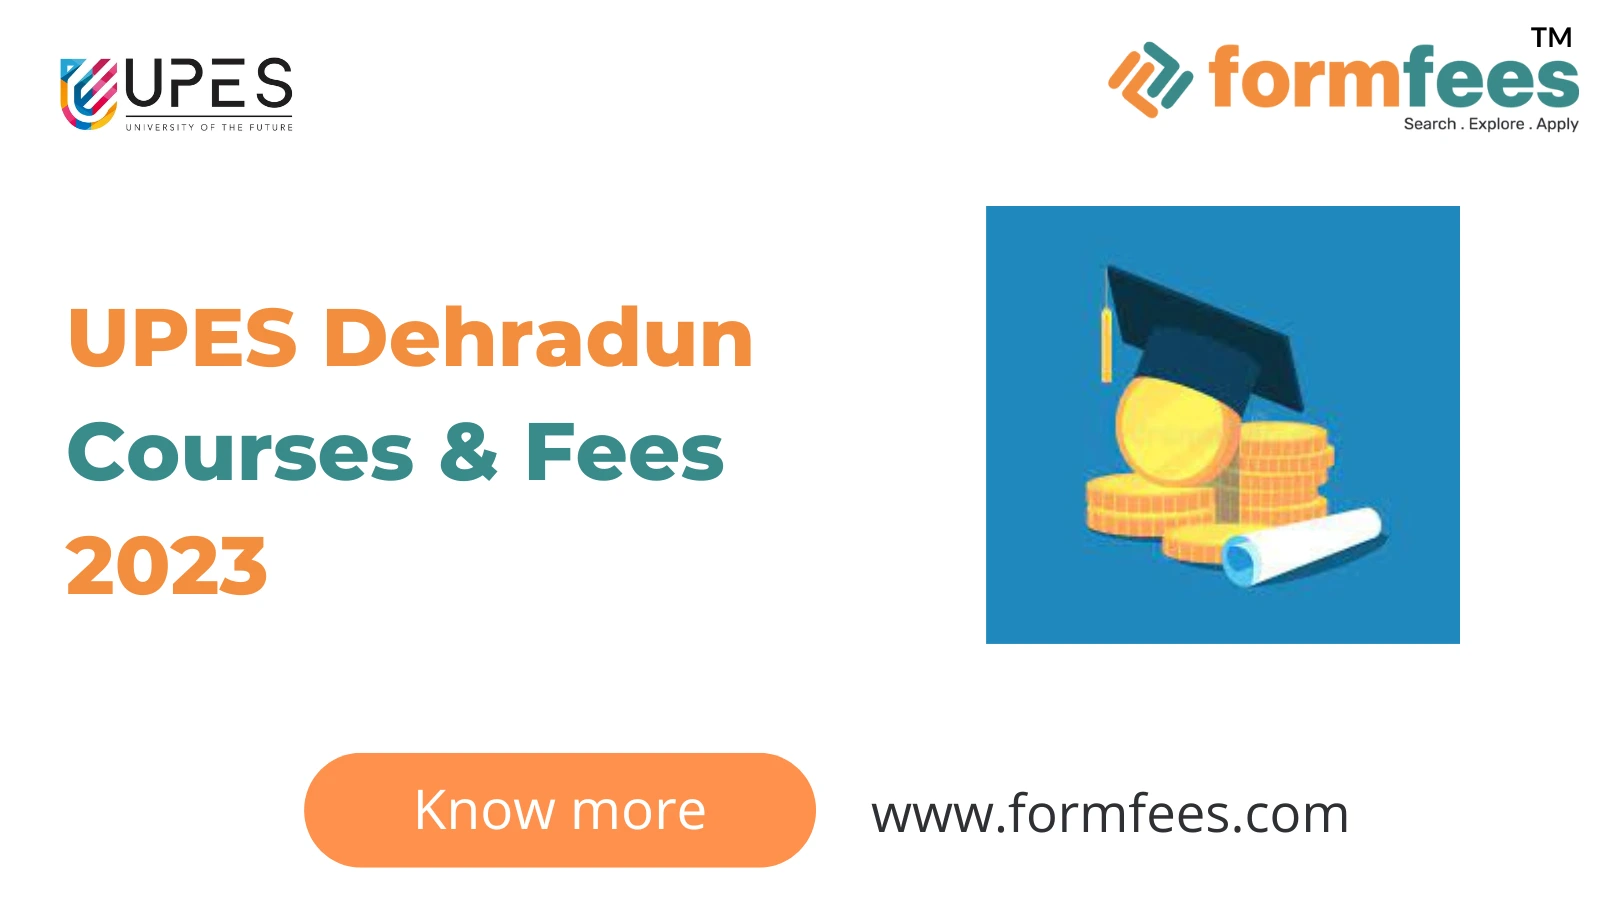 UPES Dehradun Courses & Fees 2023